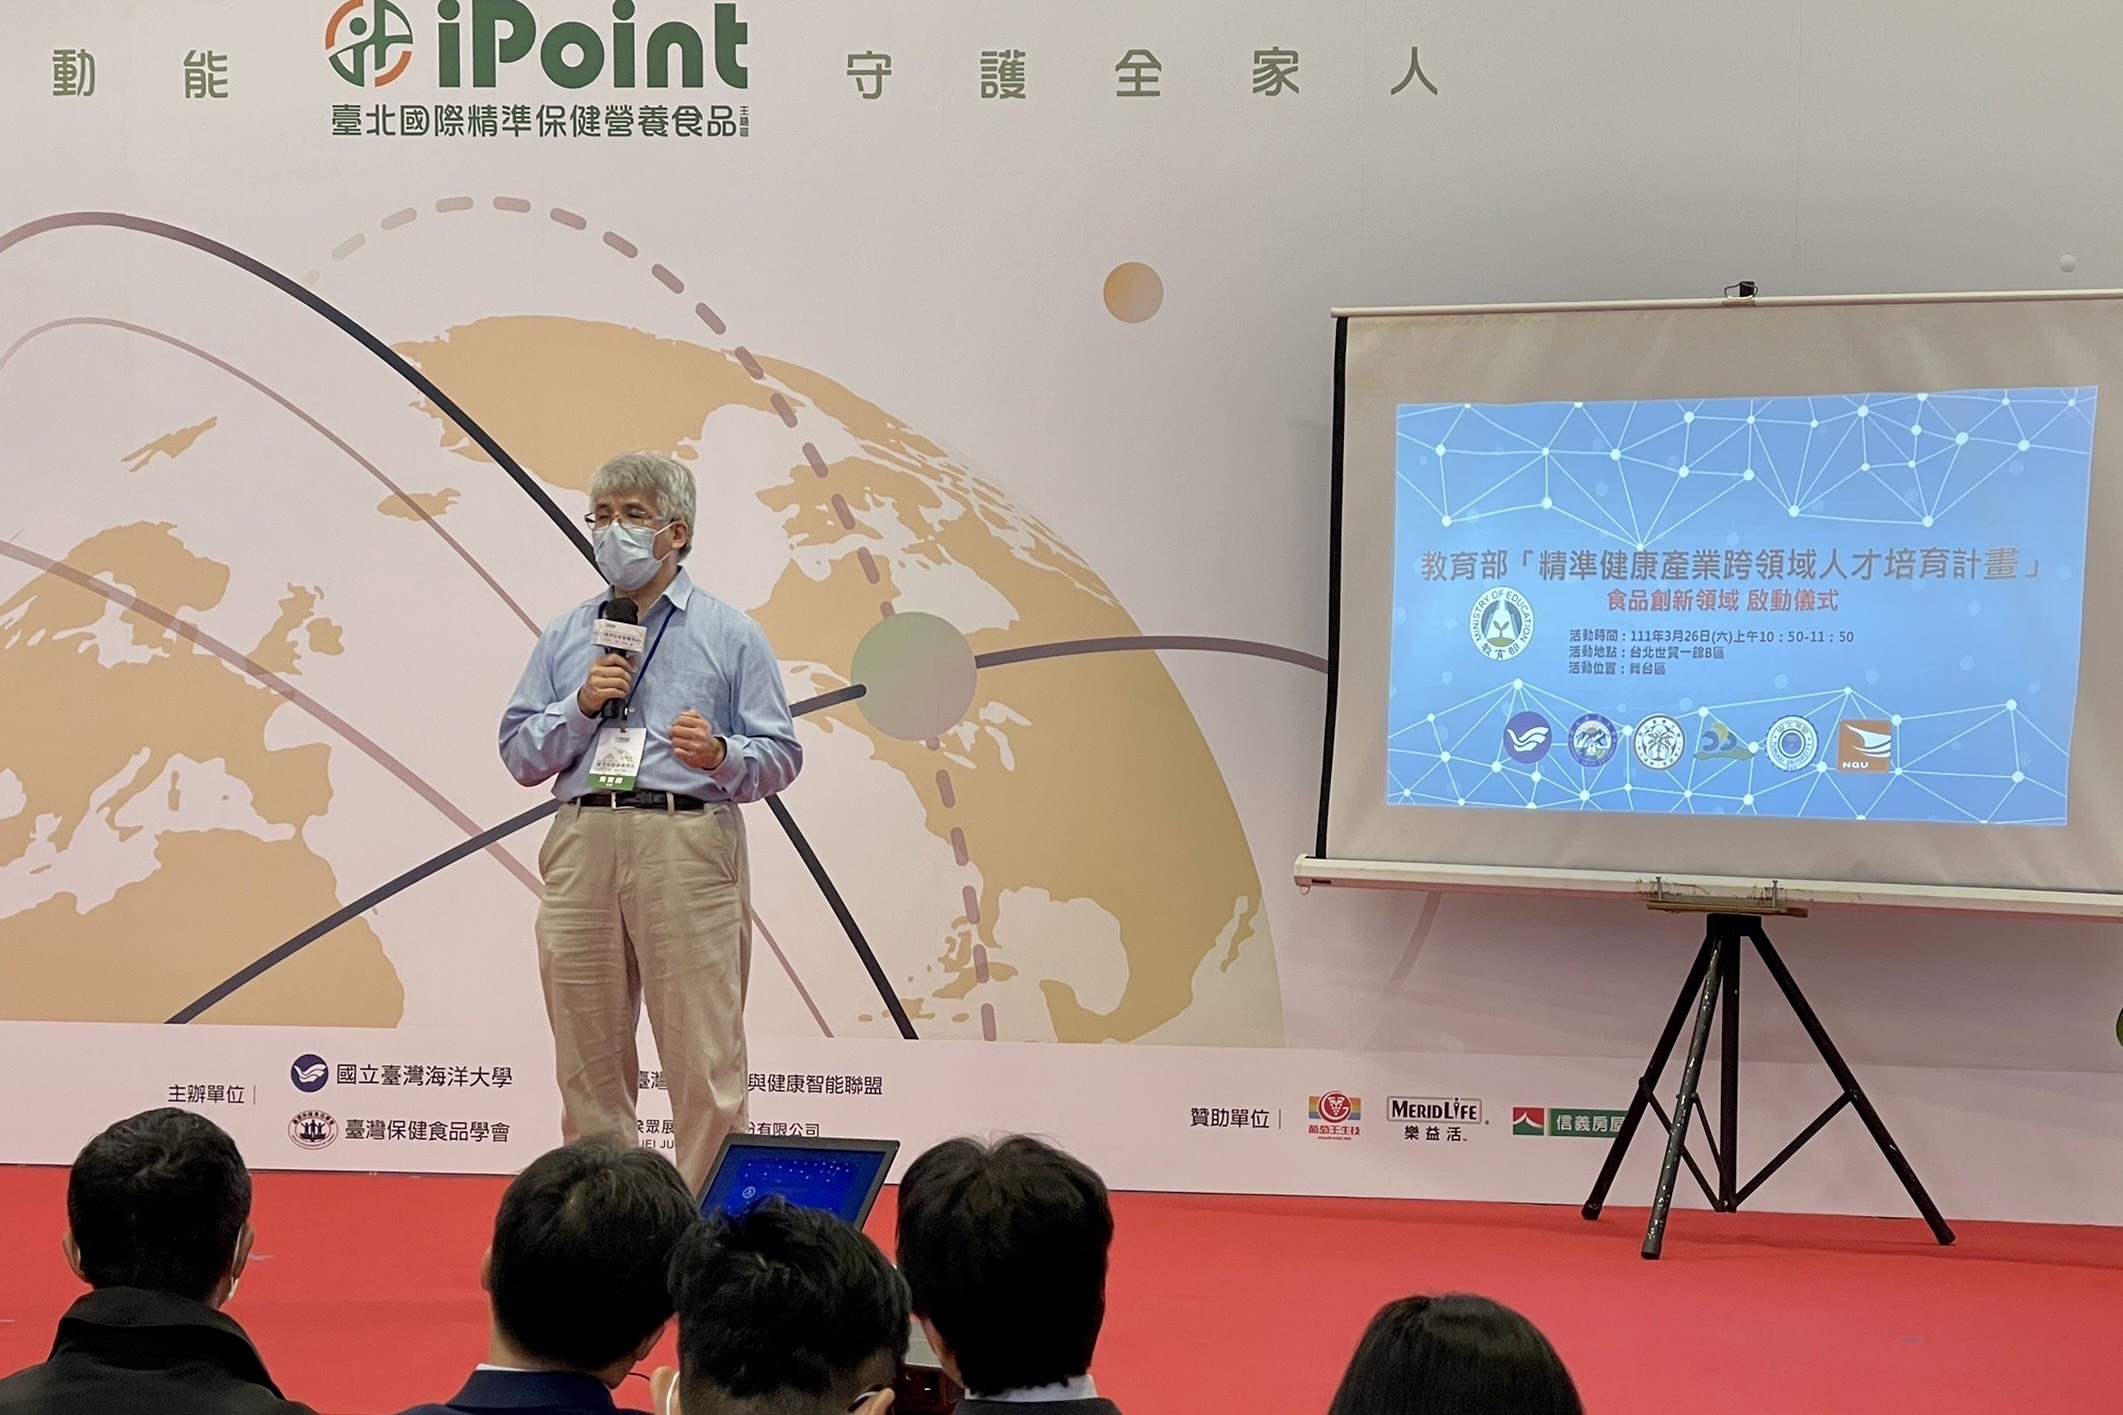 計畫主持人吳彰哲教授表示重點在於建立ICT 與生農之「產產學」合作機制平臺，跨足數位科技領域